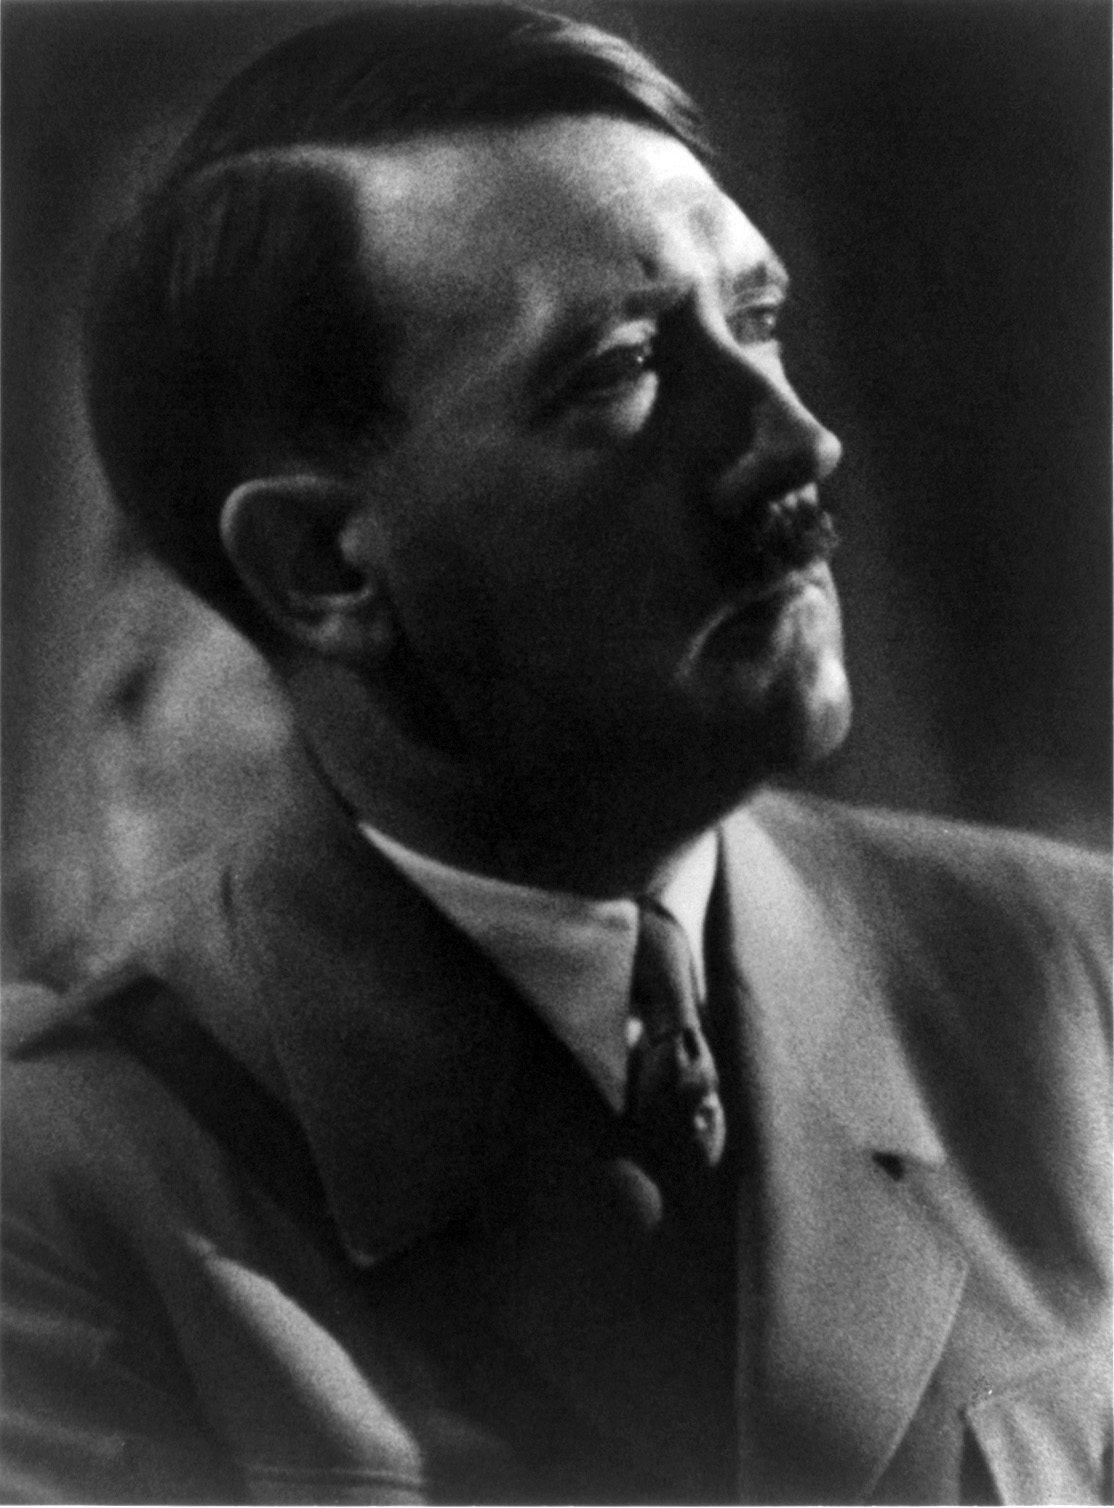 1939: Assassination Attempt on Hitler